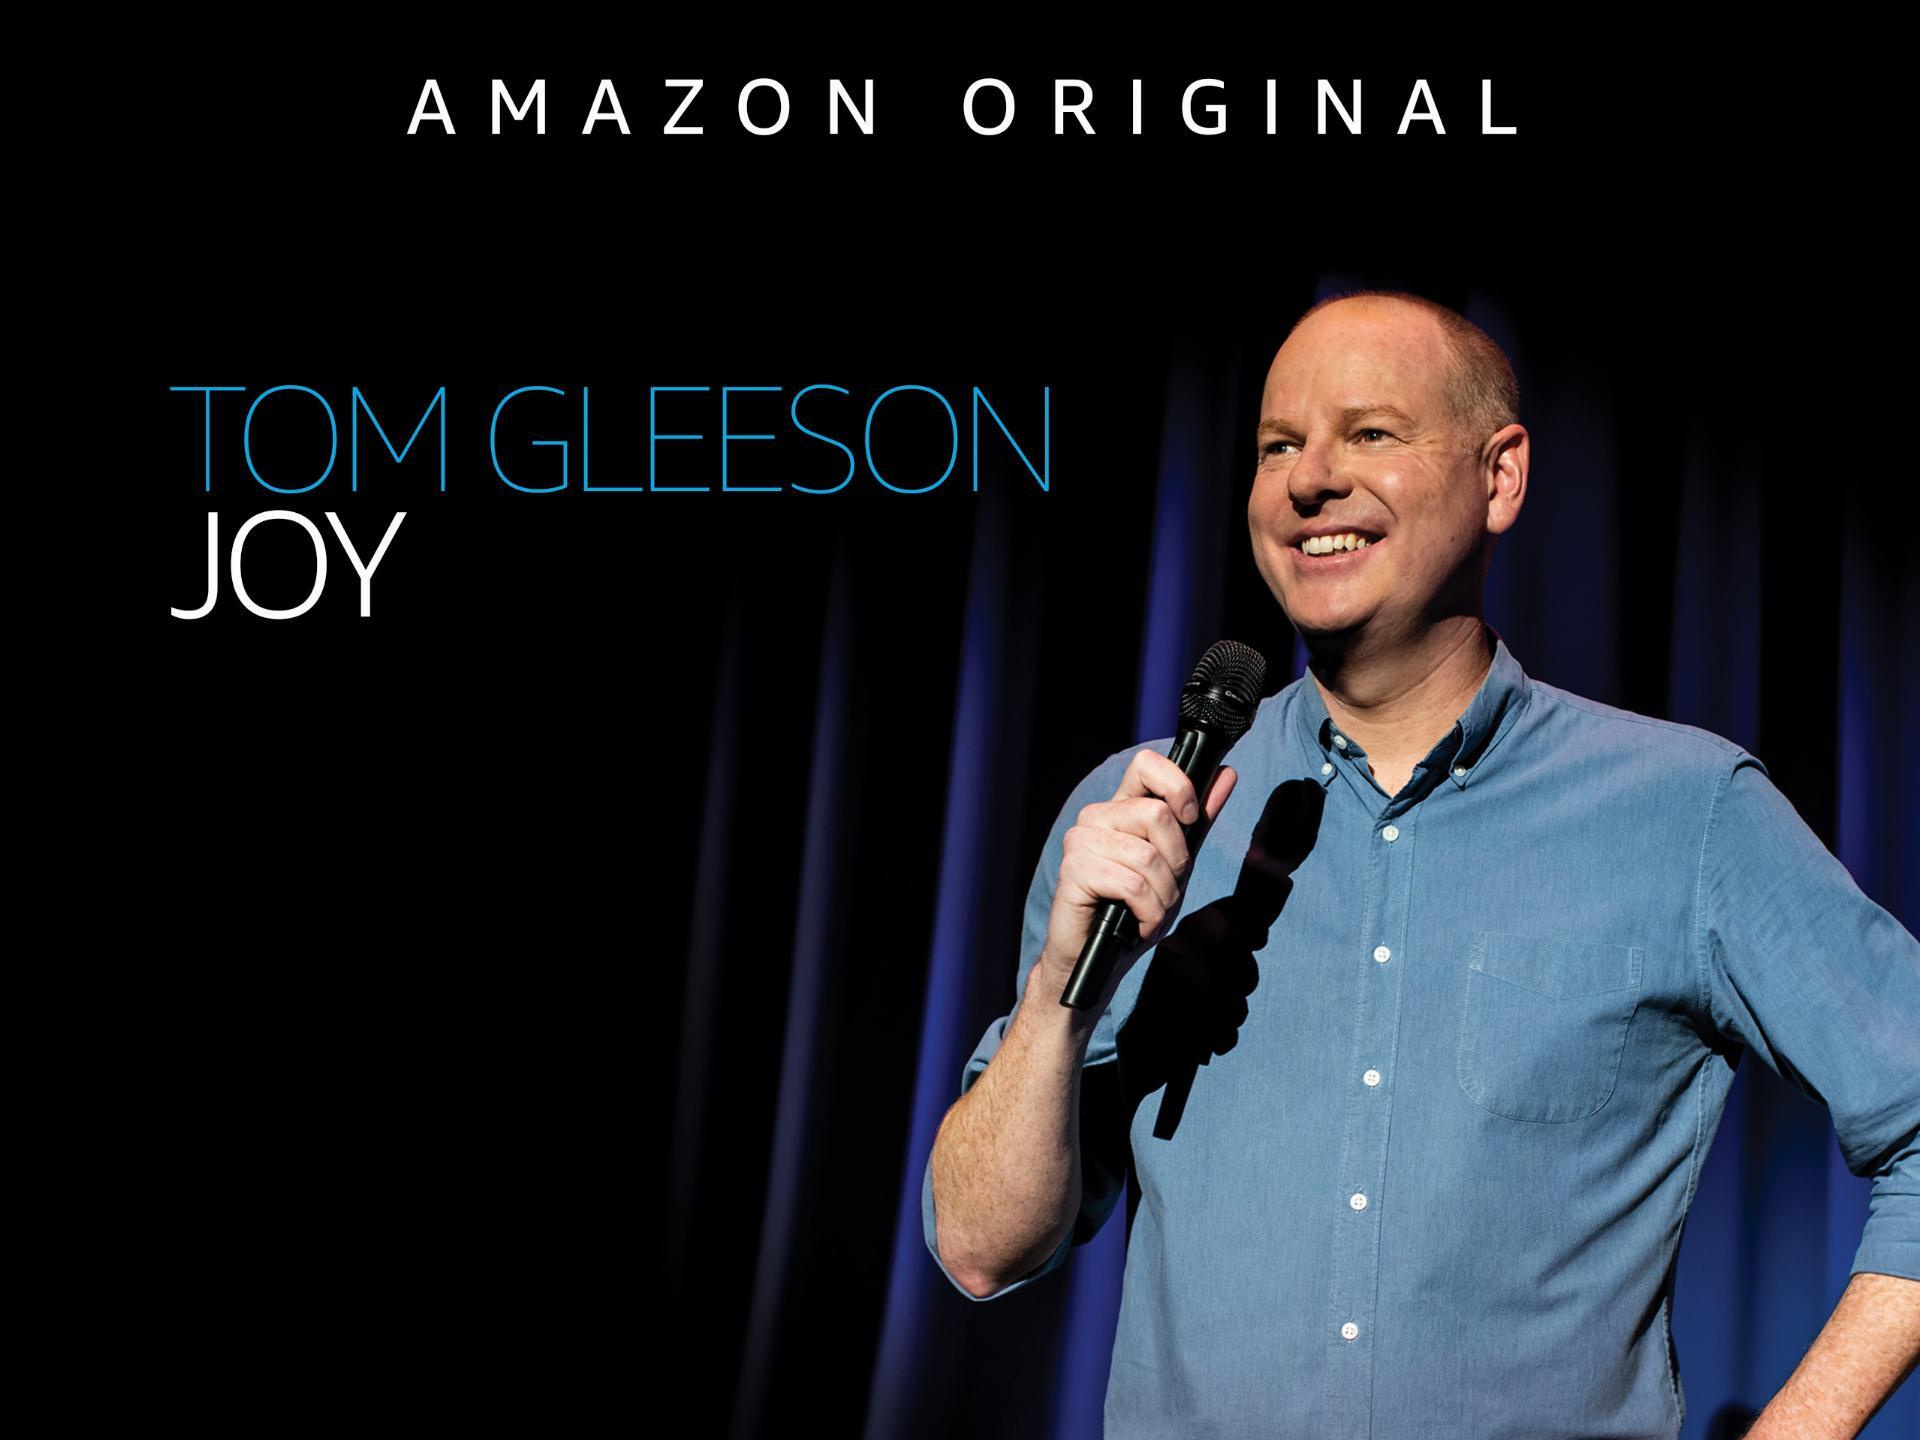 ტომ გლისონი: ბედნიერება / Tom Gleeson: Joy